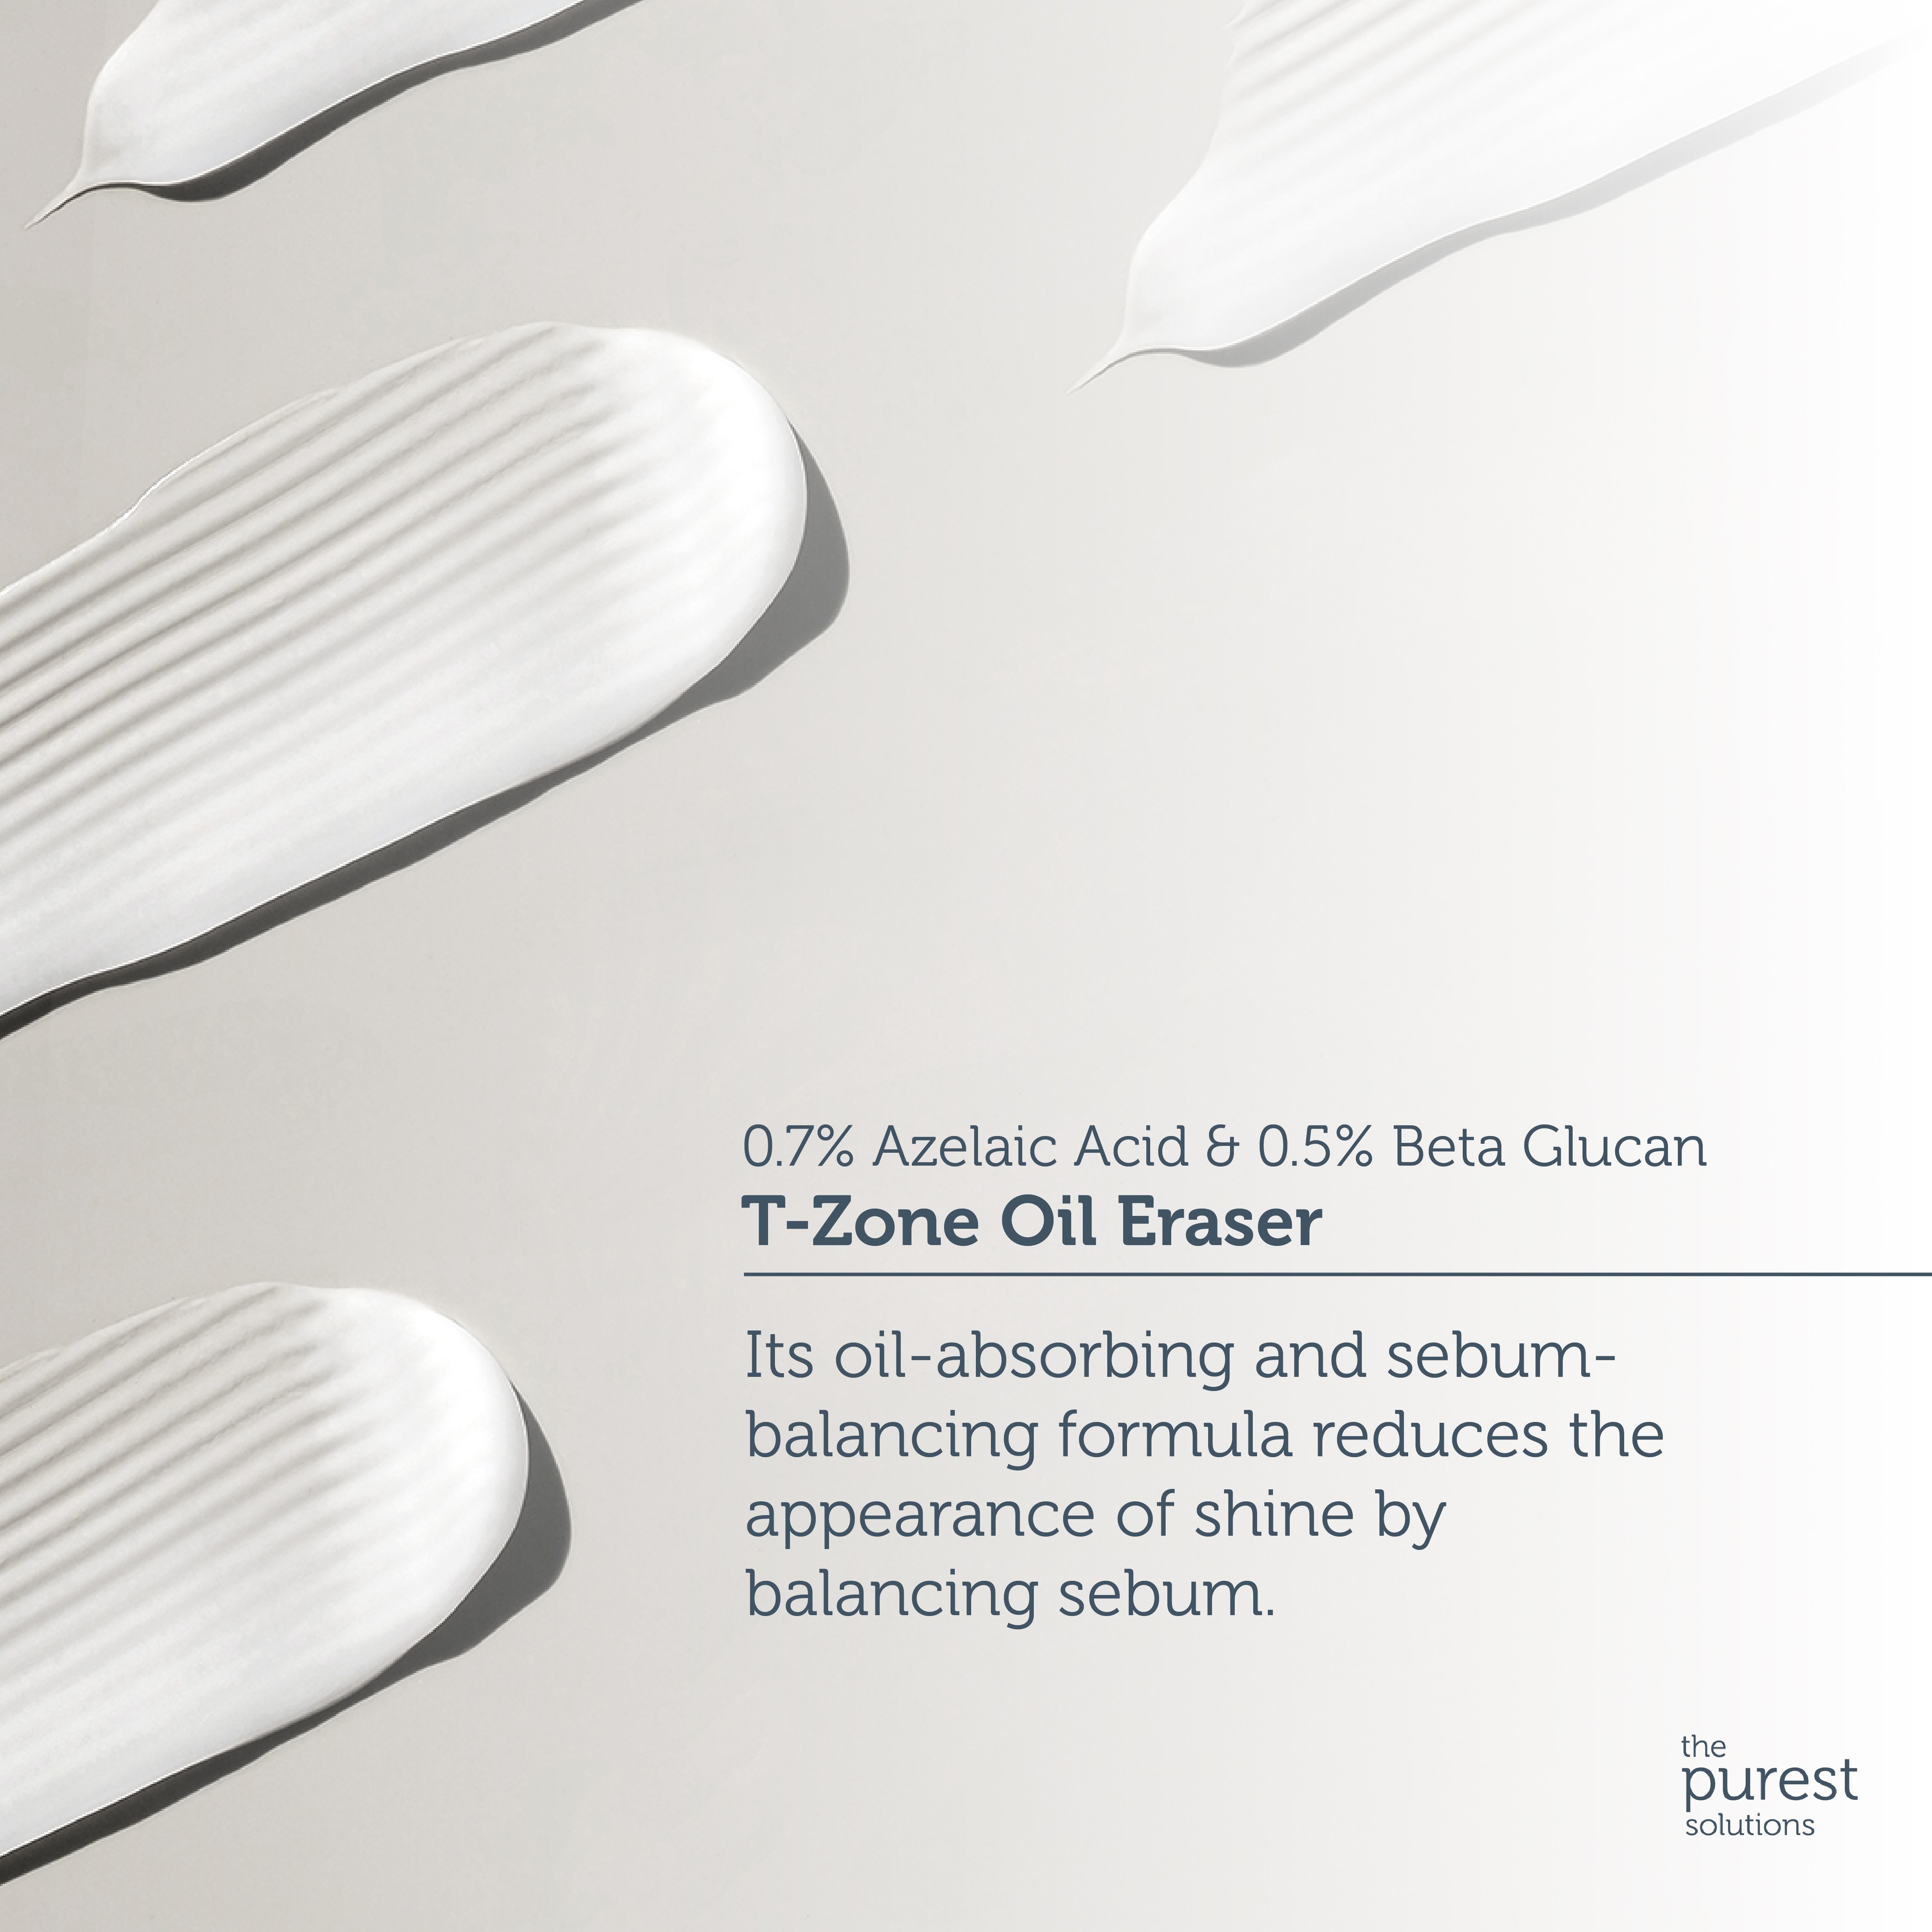 T-zone Oil Eraser